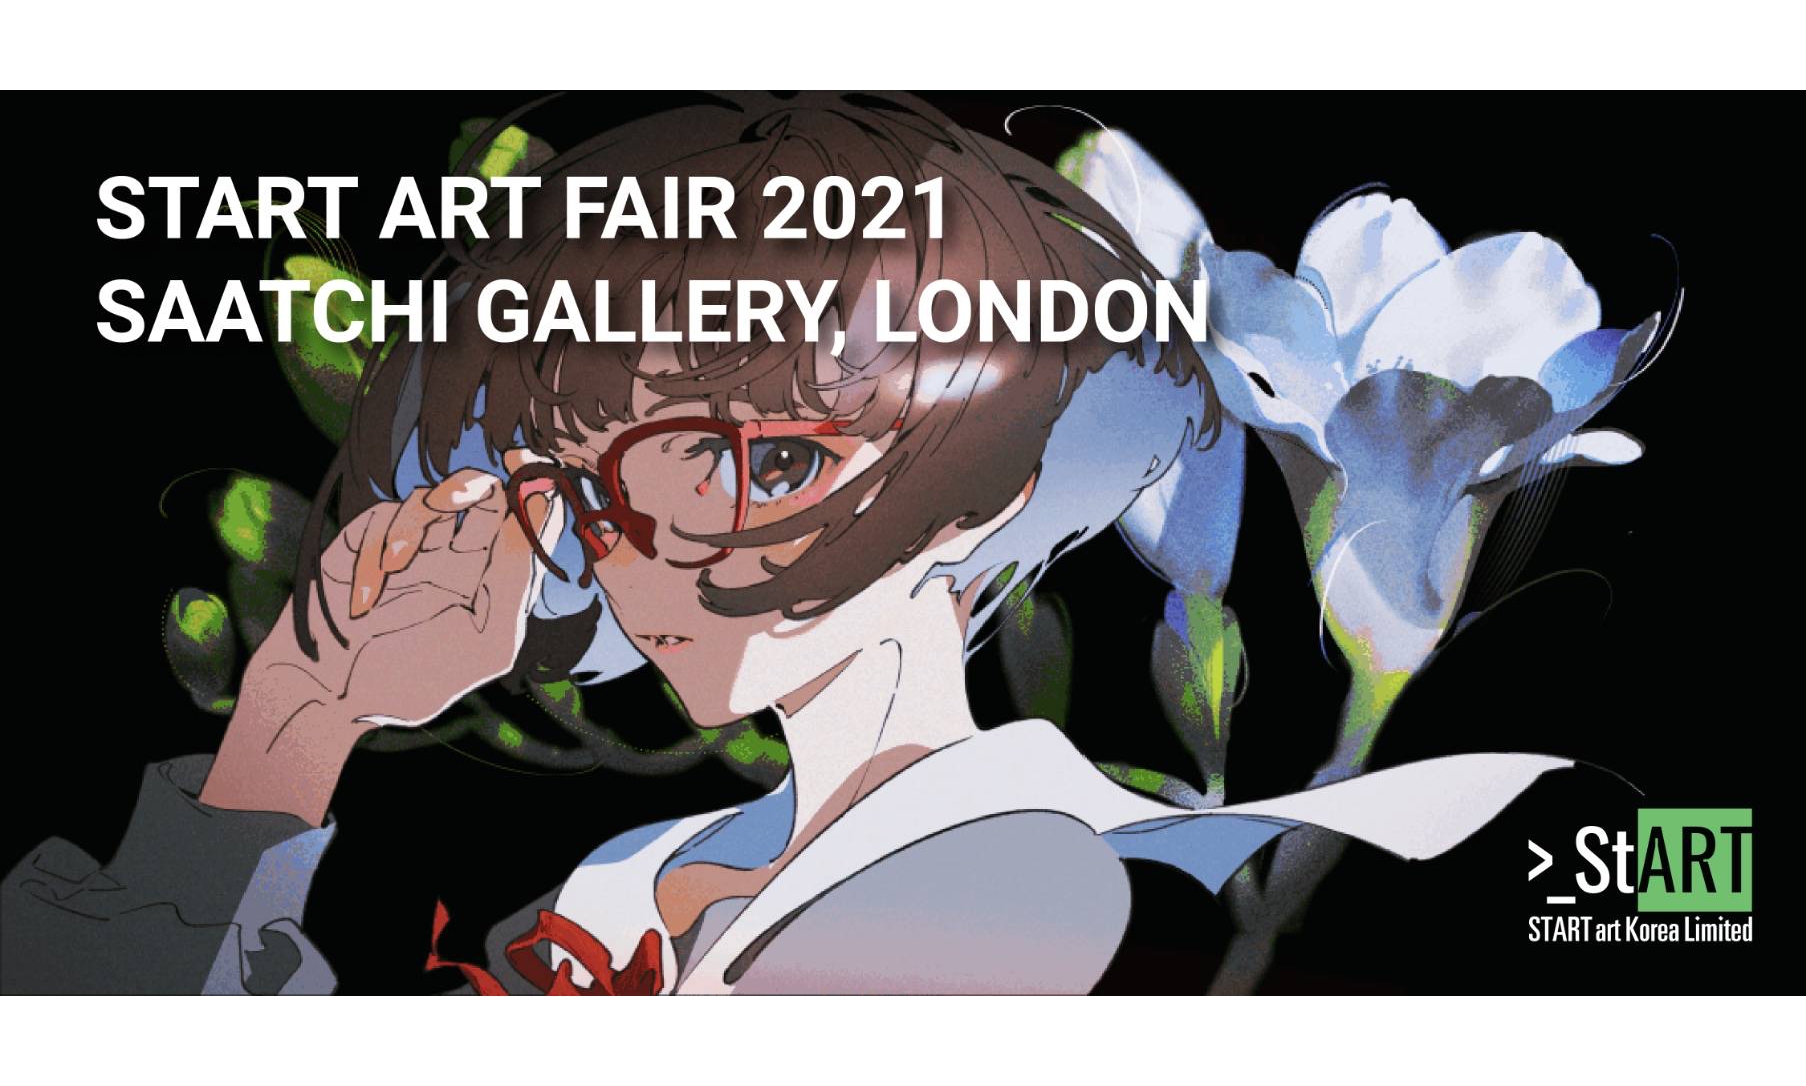 アニメーター／イラストレーションアーティスト米山舞「START ART FAIR 2021」に日本人アーティストとして選出1